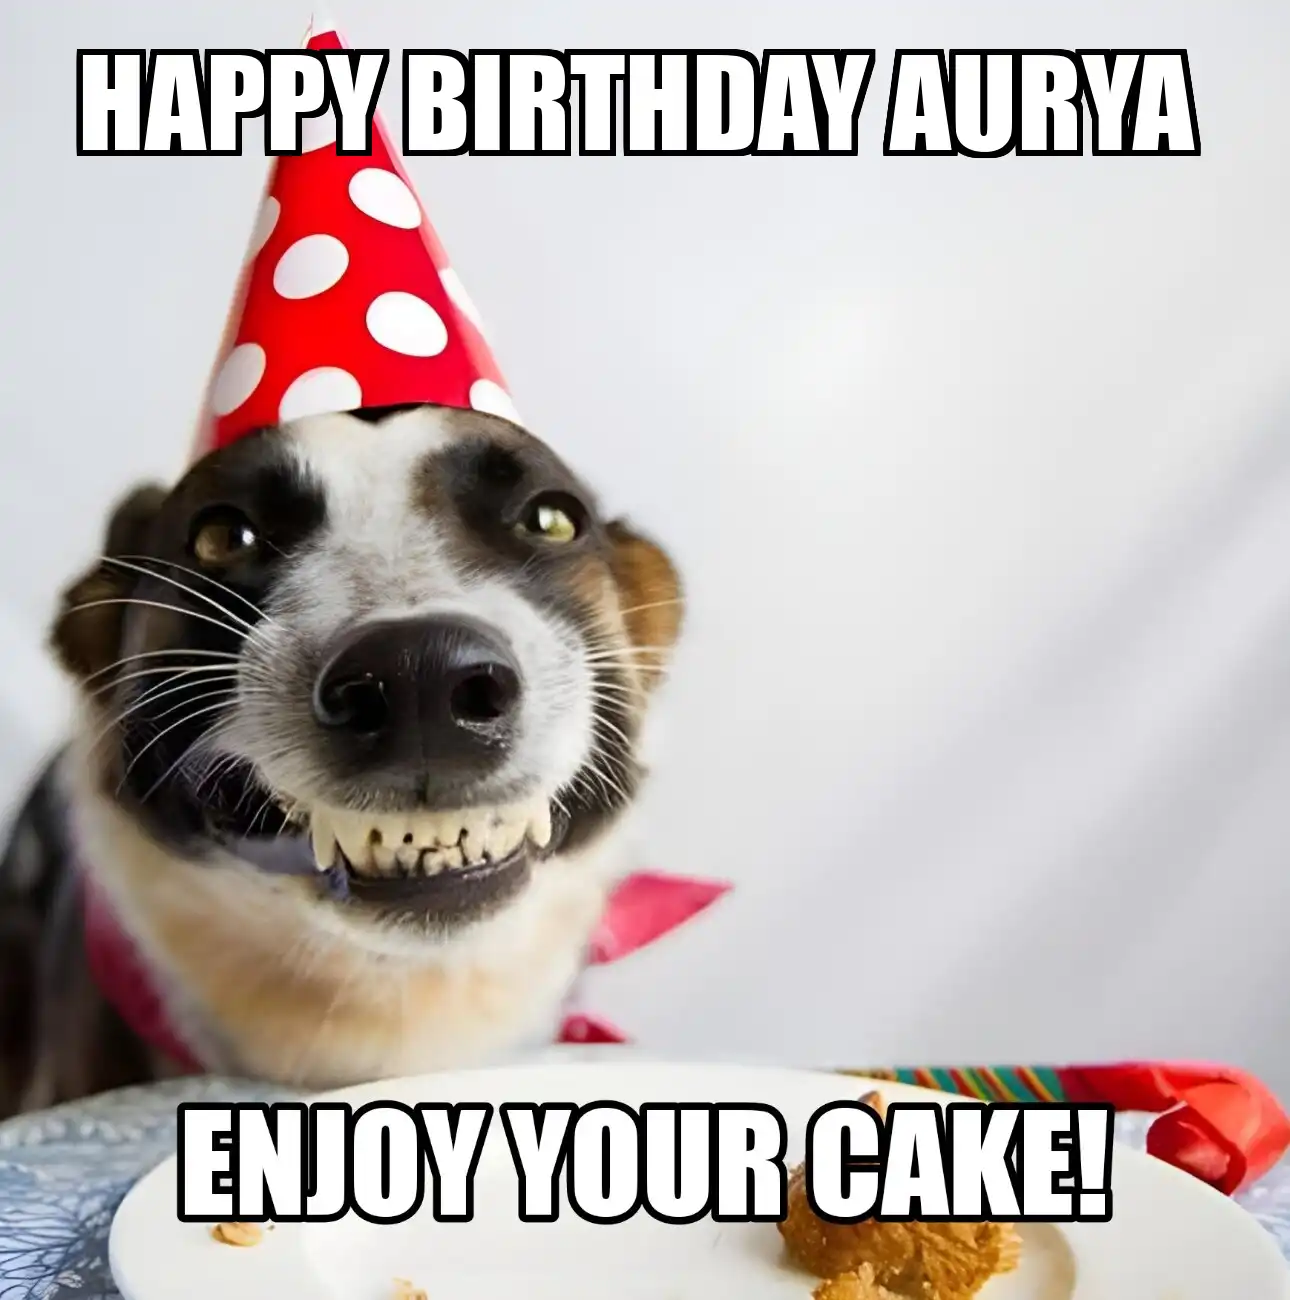 Happy Birthday Aurya Enjoy Your Cake Dog Meme